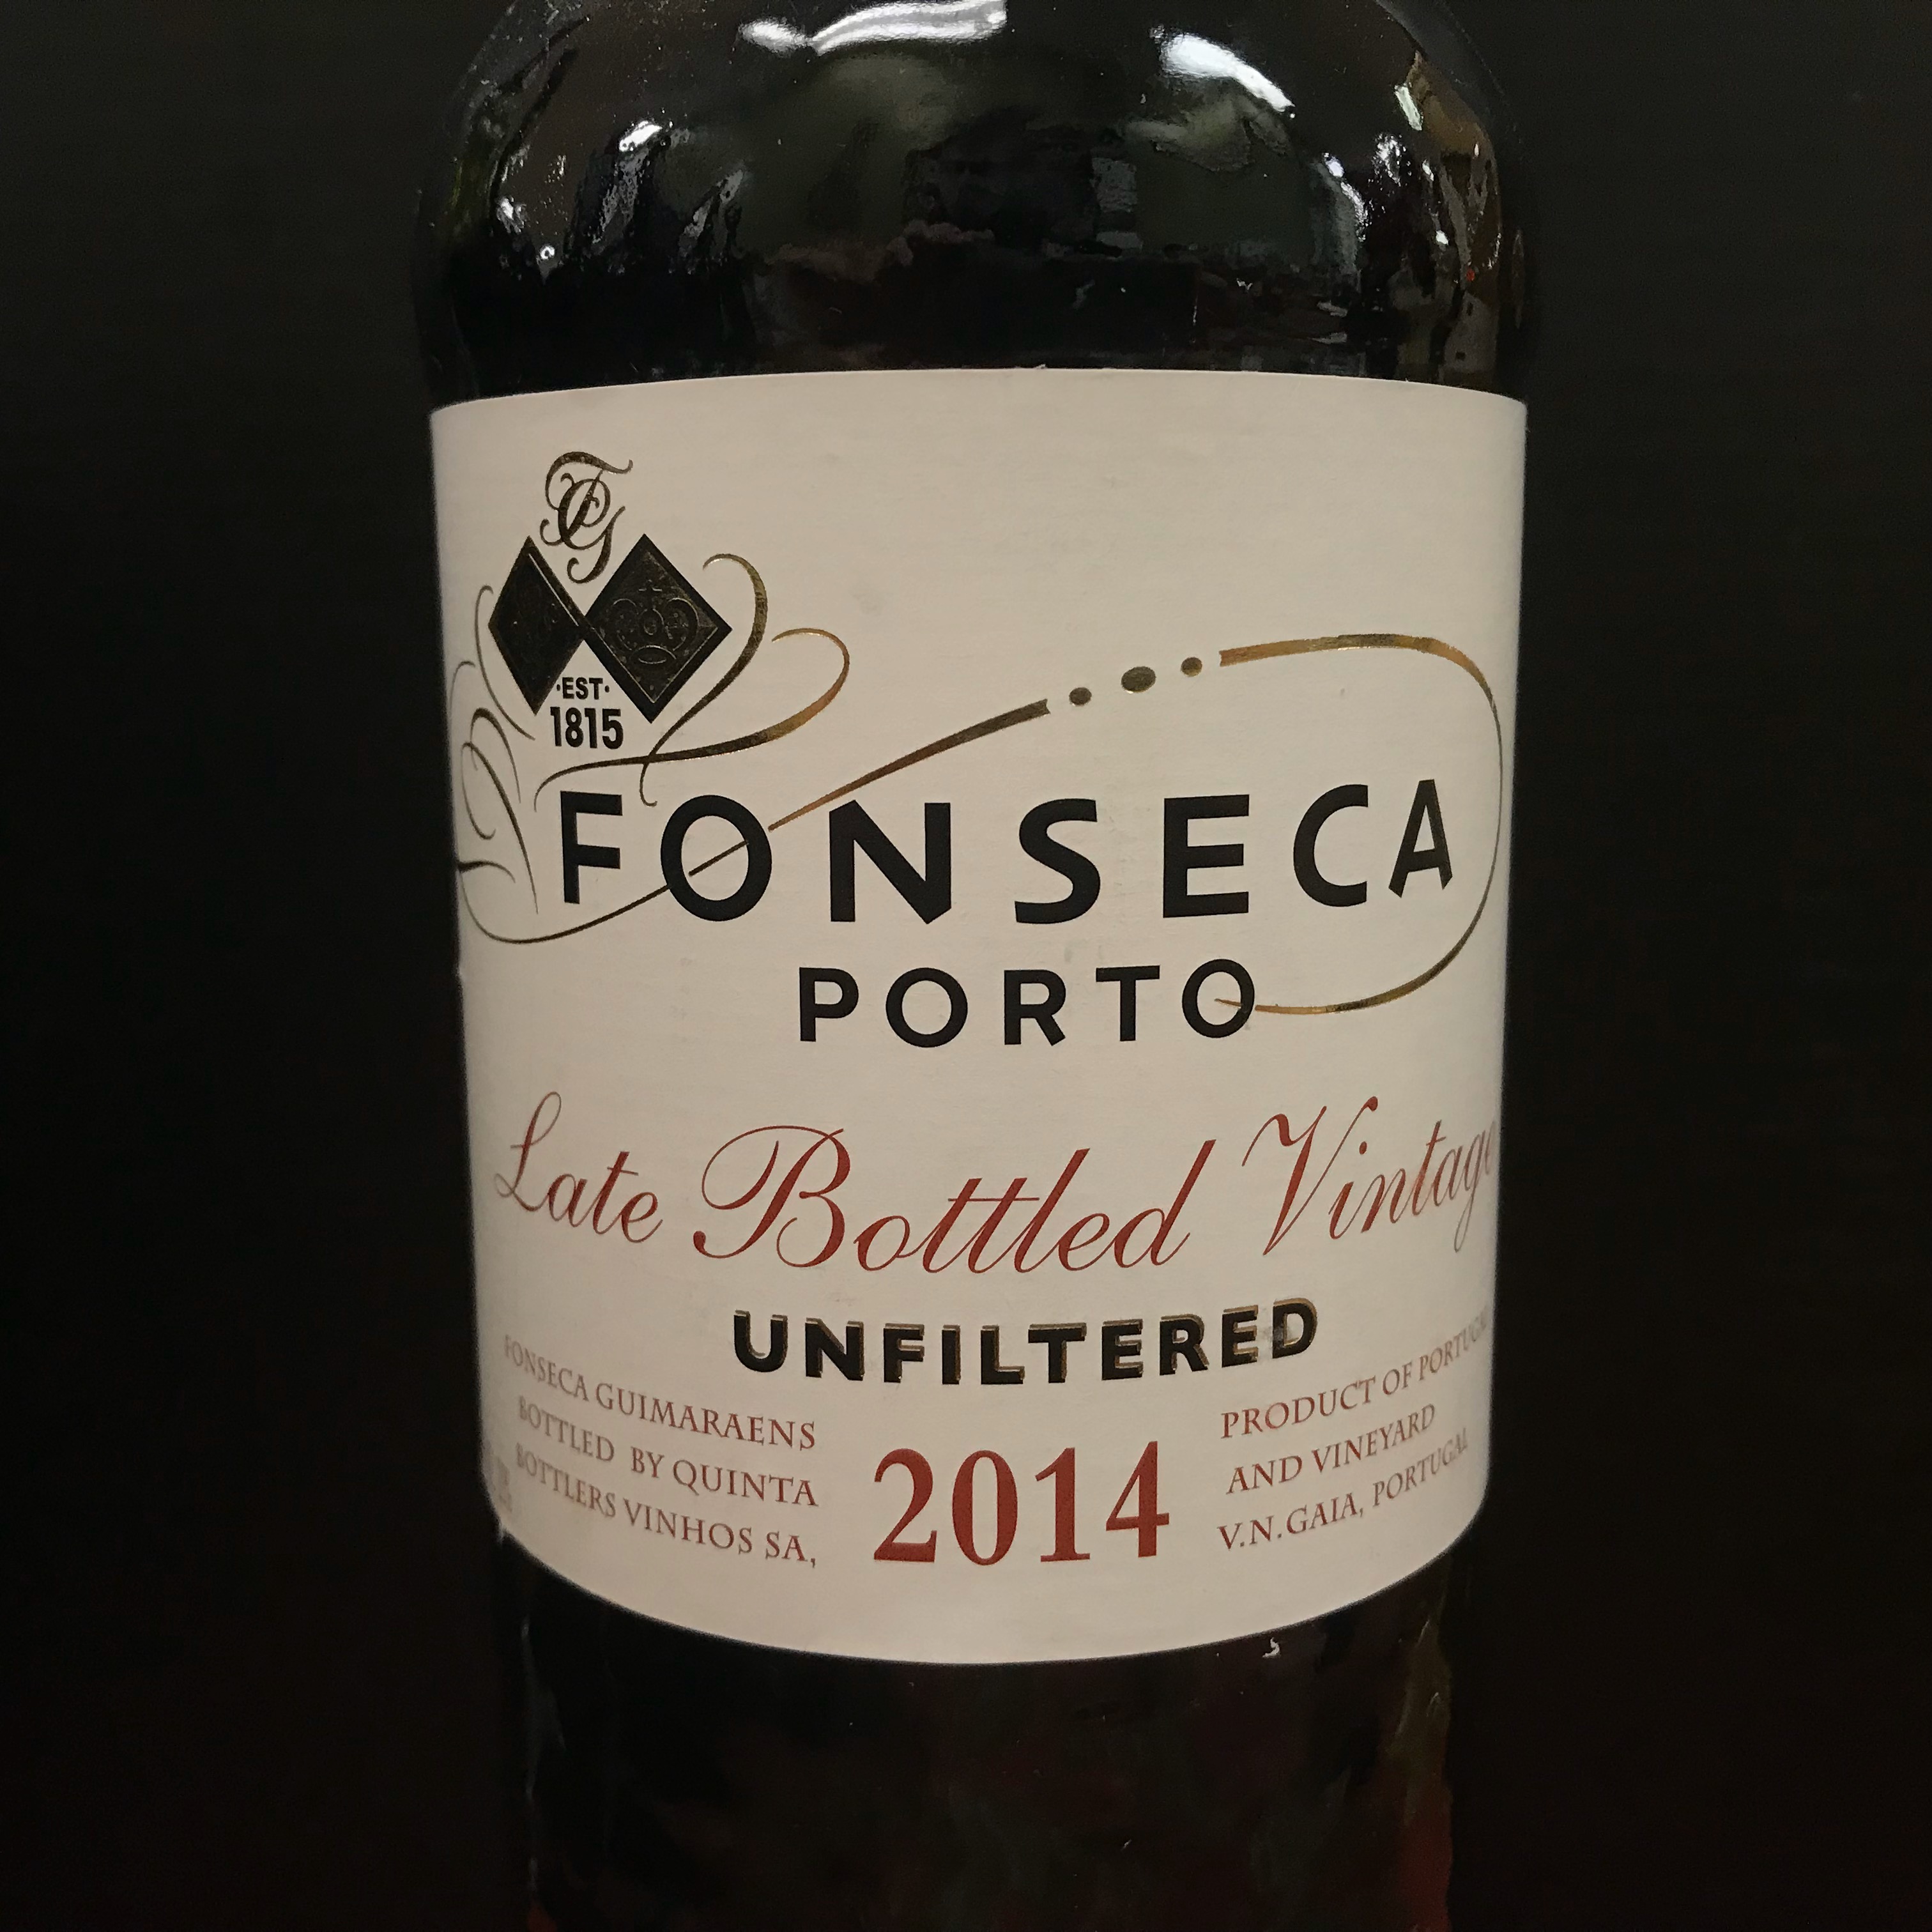 Fonseca Late Bottle Vintage Unfiltered Port 2014